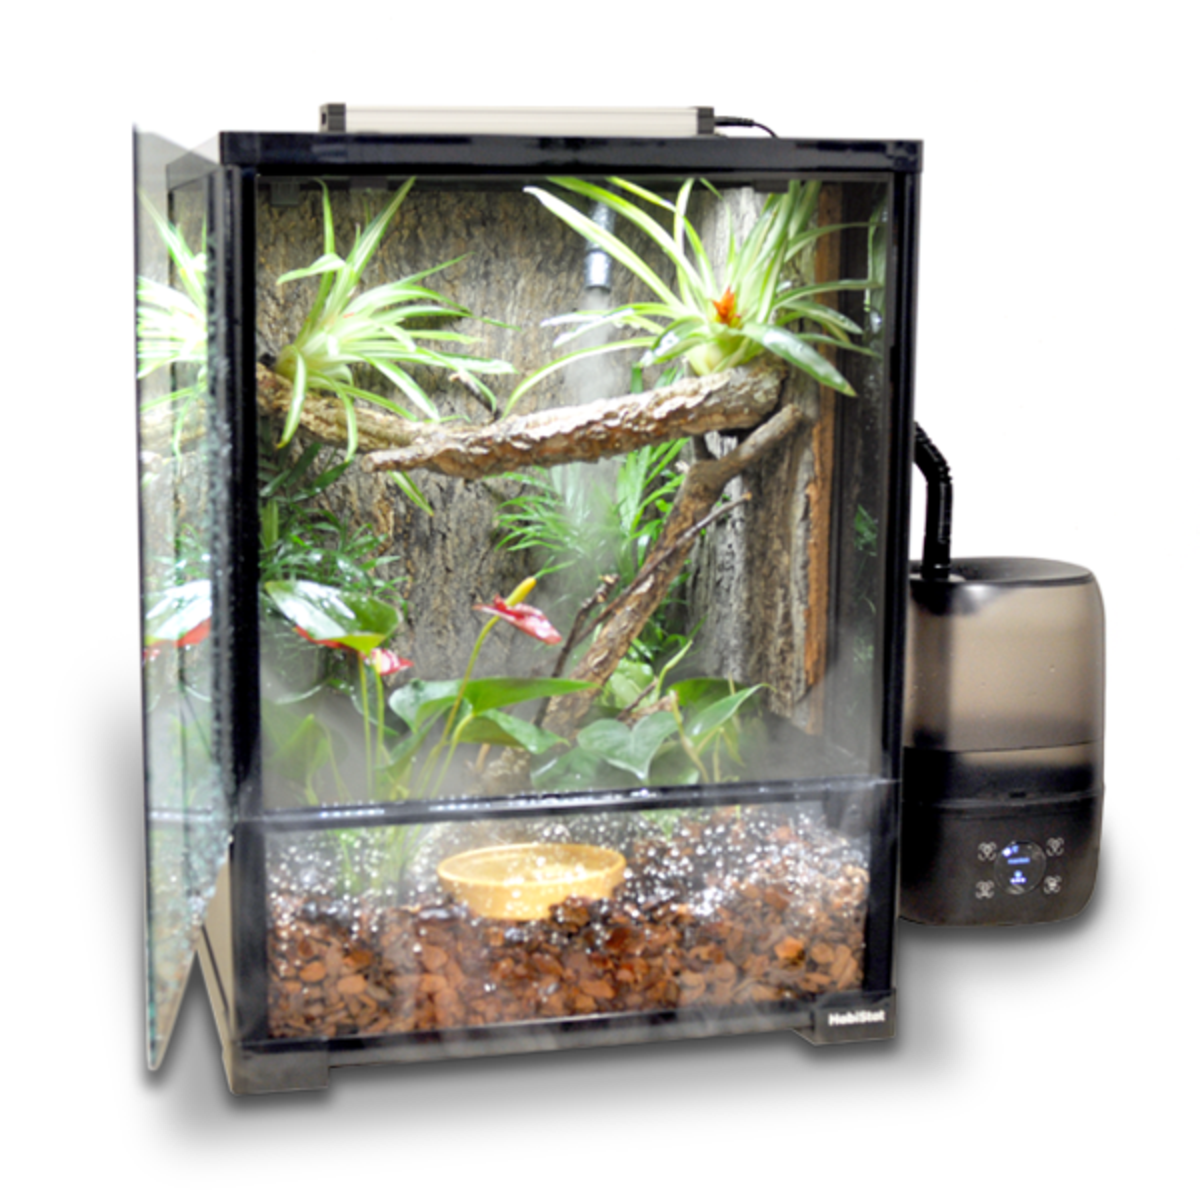 HabiStat Glass Reptile Terrarium (Safer Packaging)